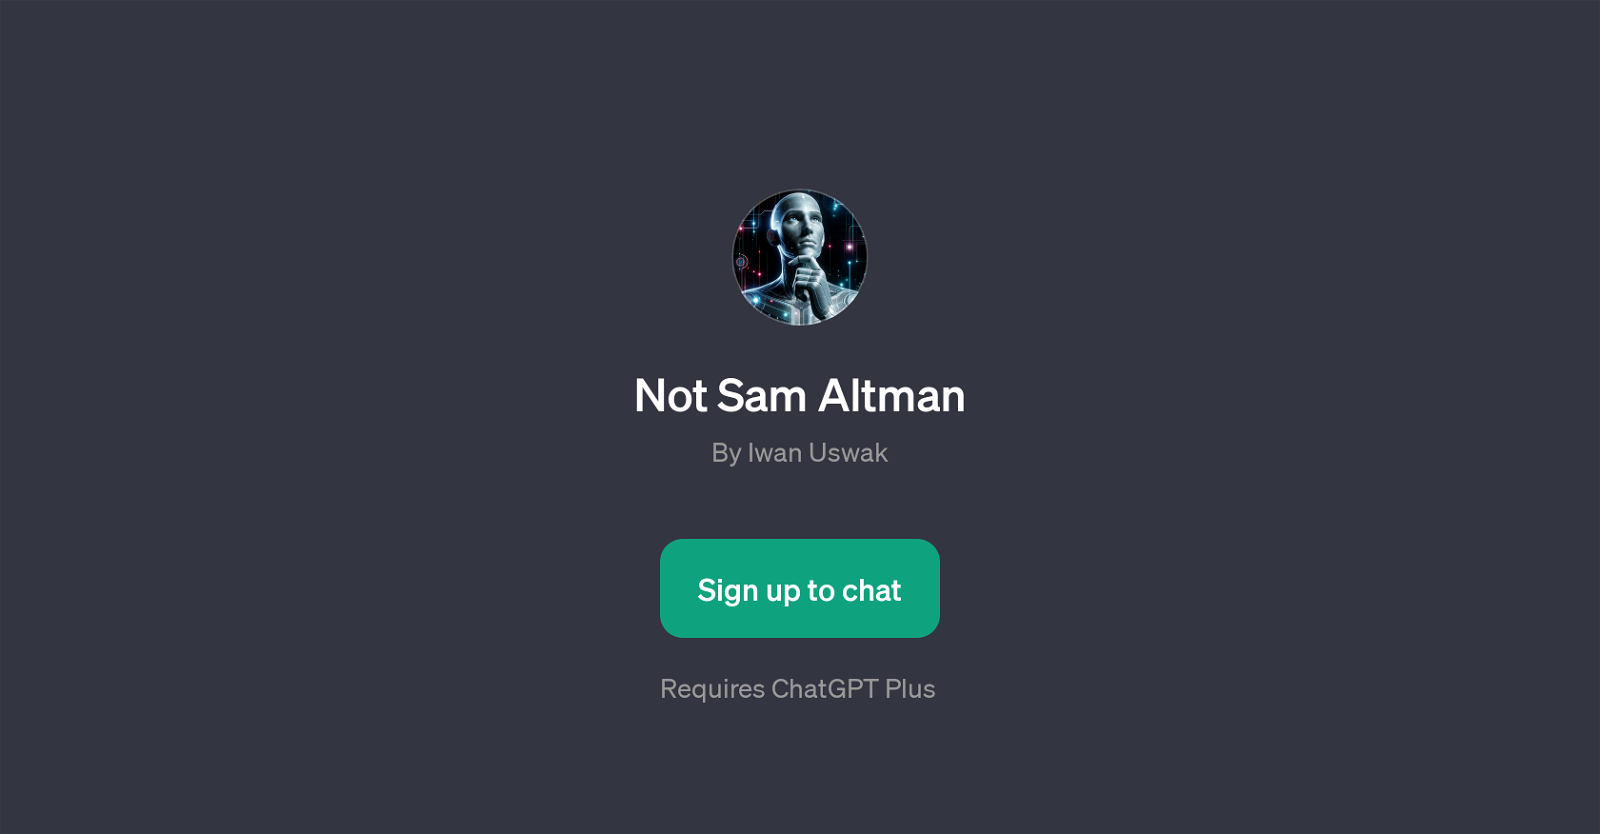 Not Sam Altman website